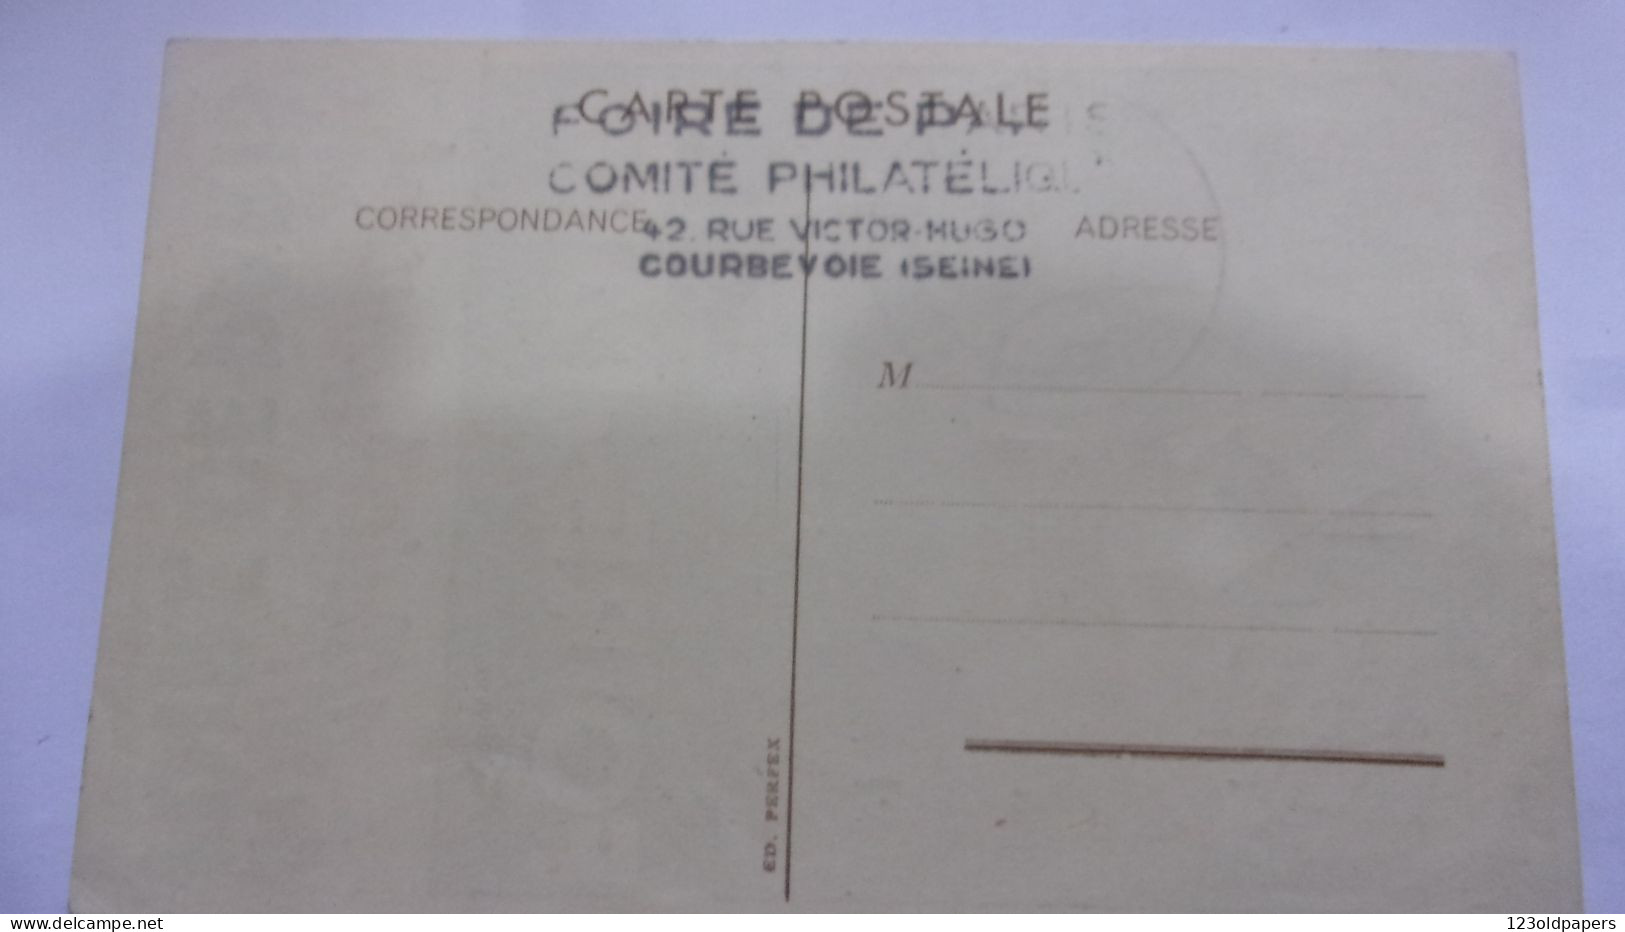 CPA Illustrée 75 - Foire De PARIS 1948 - Cachet Philatélique Sur Timbres - Ausstellungen